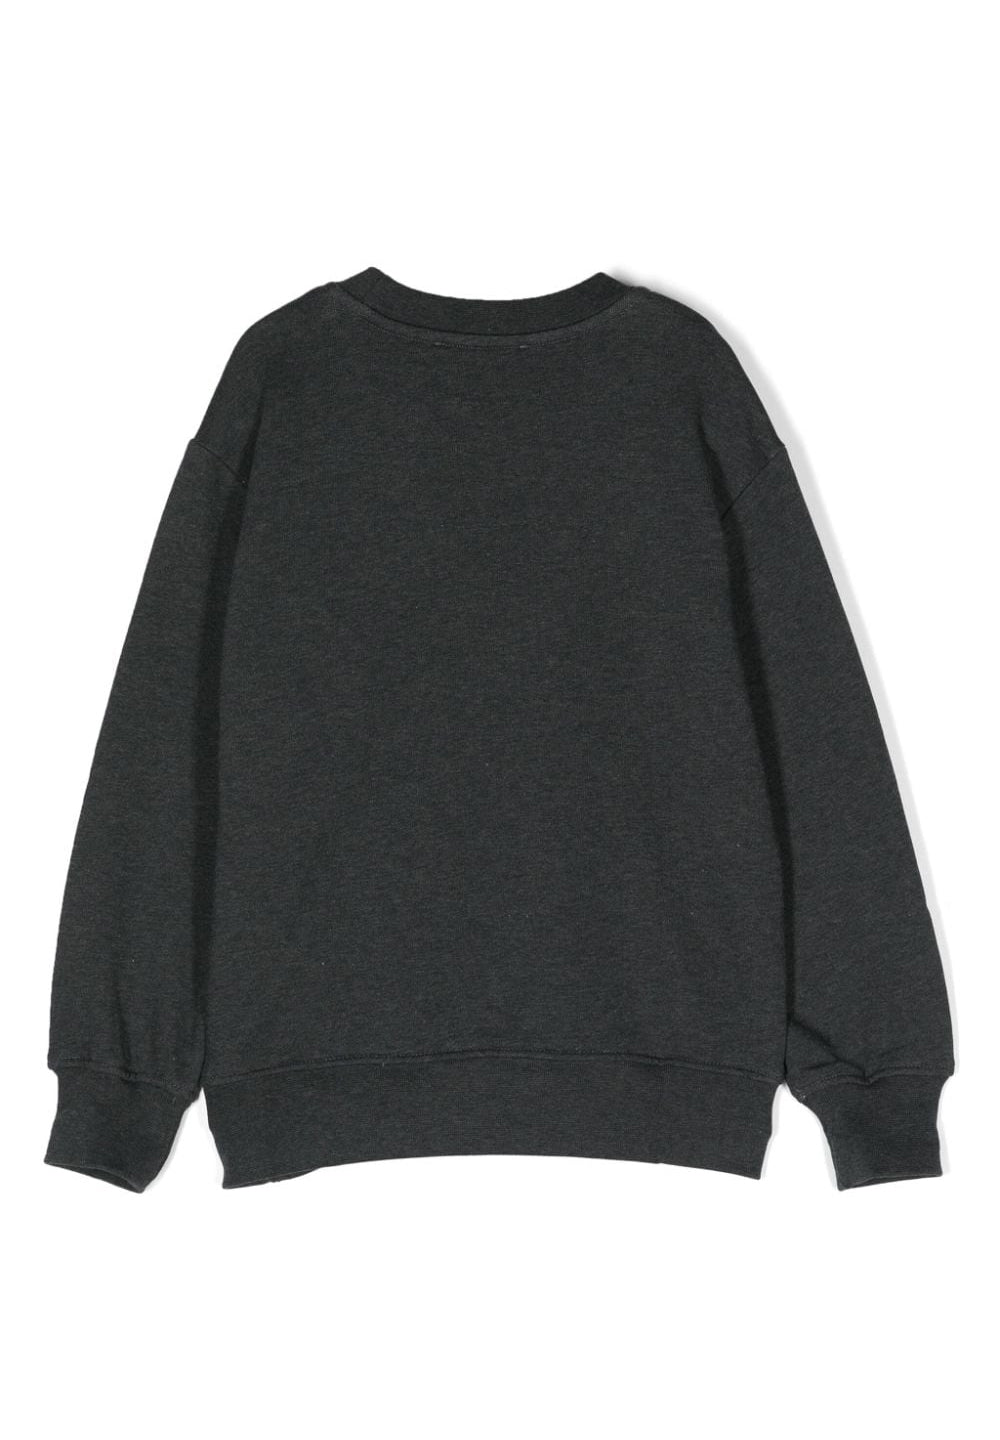 Schwarzes Sweatshirt mit Rundhalsausschnitt für Mädchen